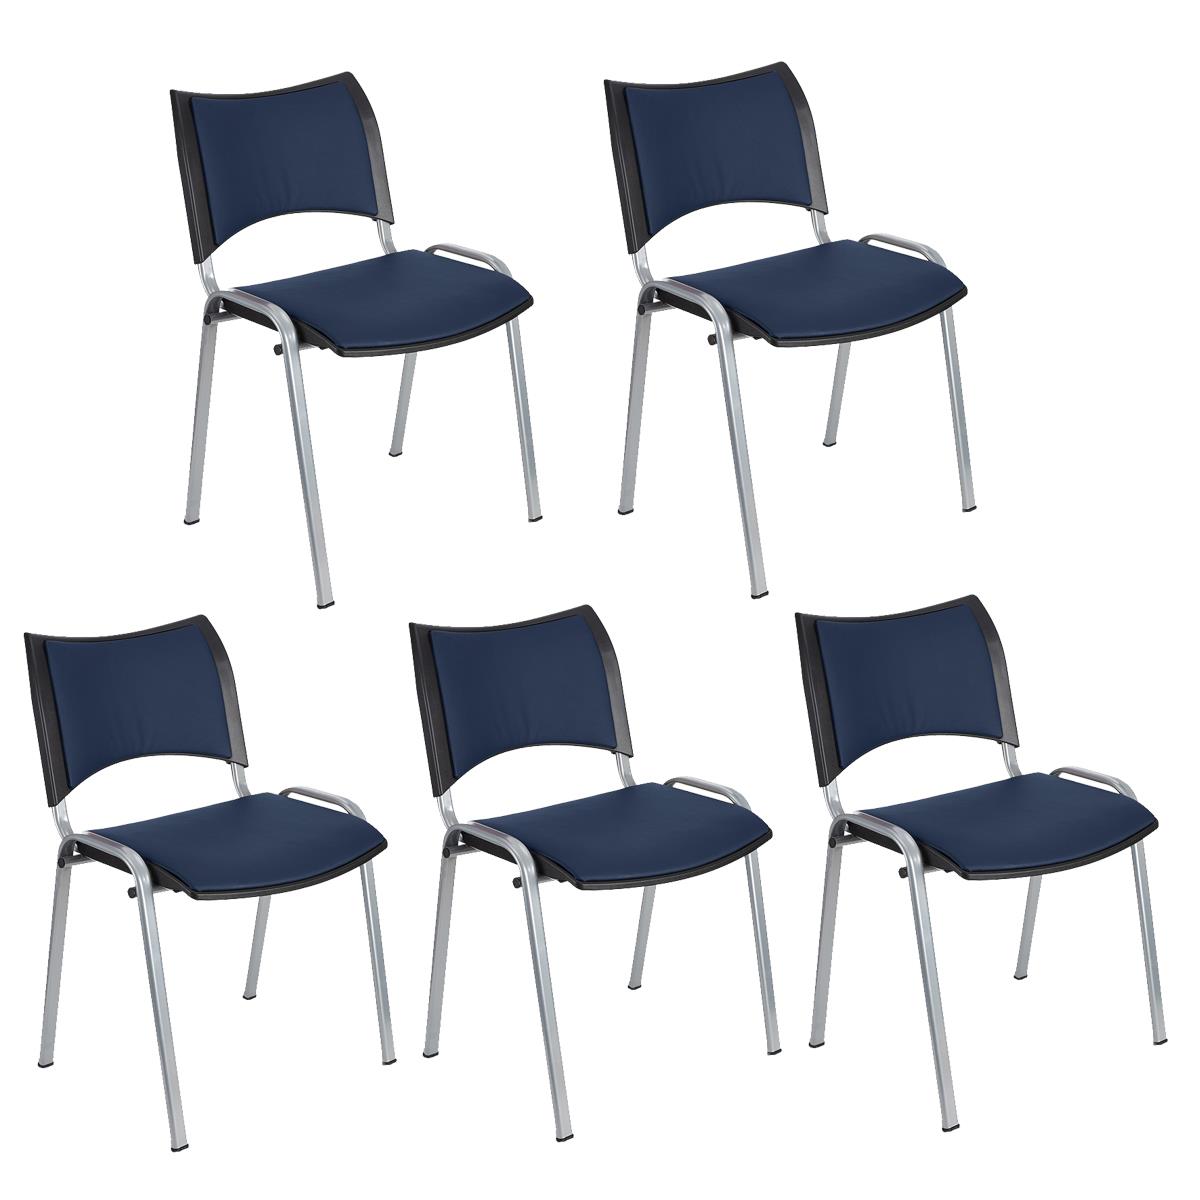 Lote 5 Cadeiras de Visita ROMEL PELE, Prática e Empilhável, Pernas Cinza, Azul